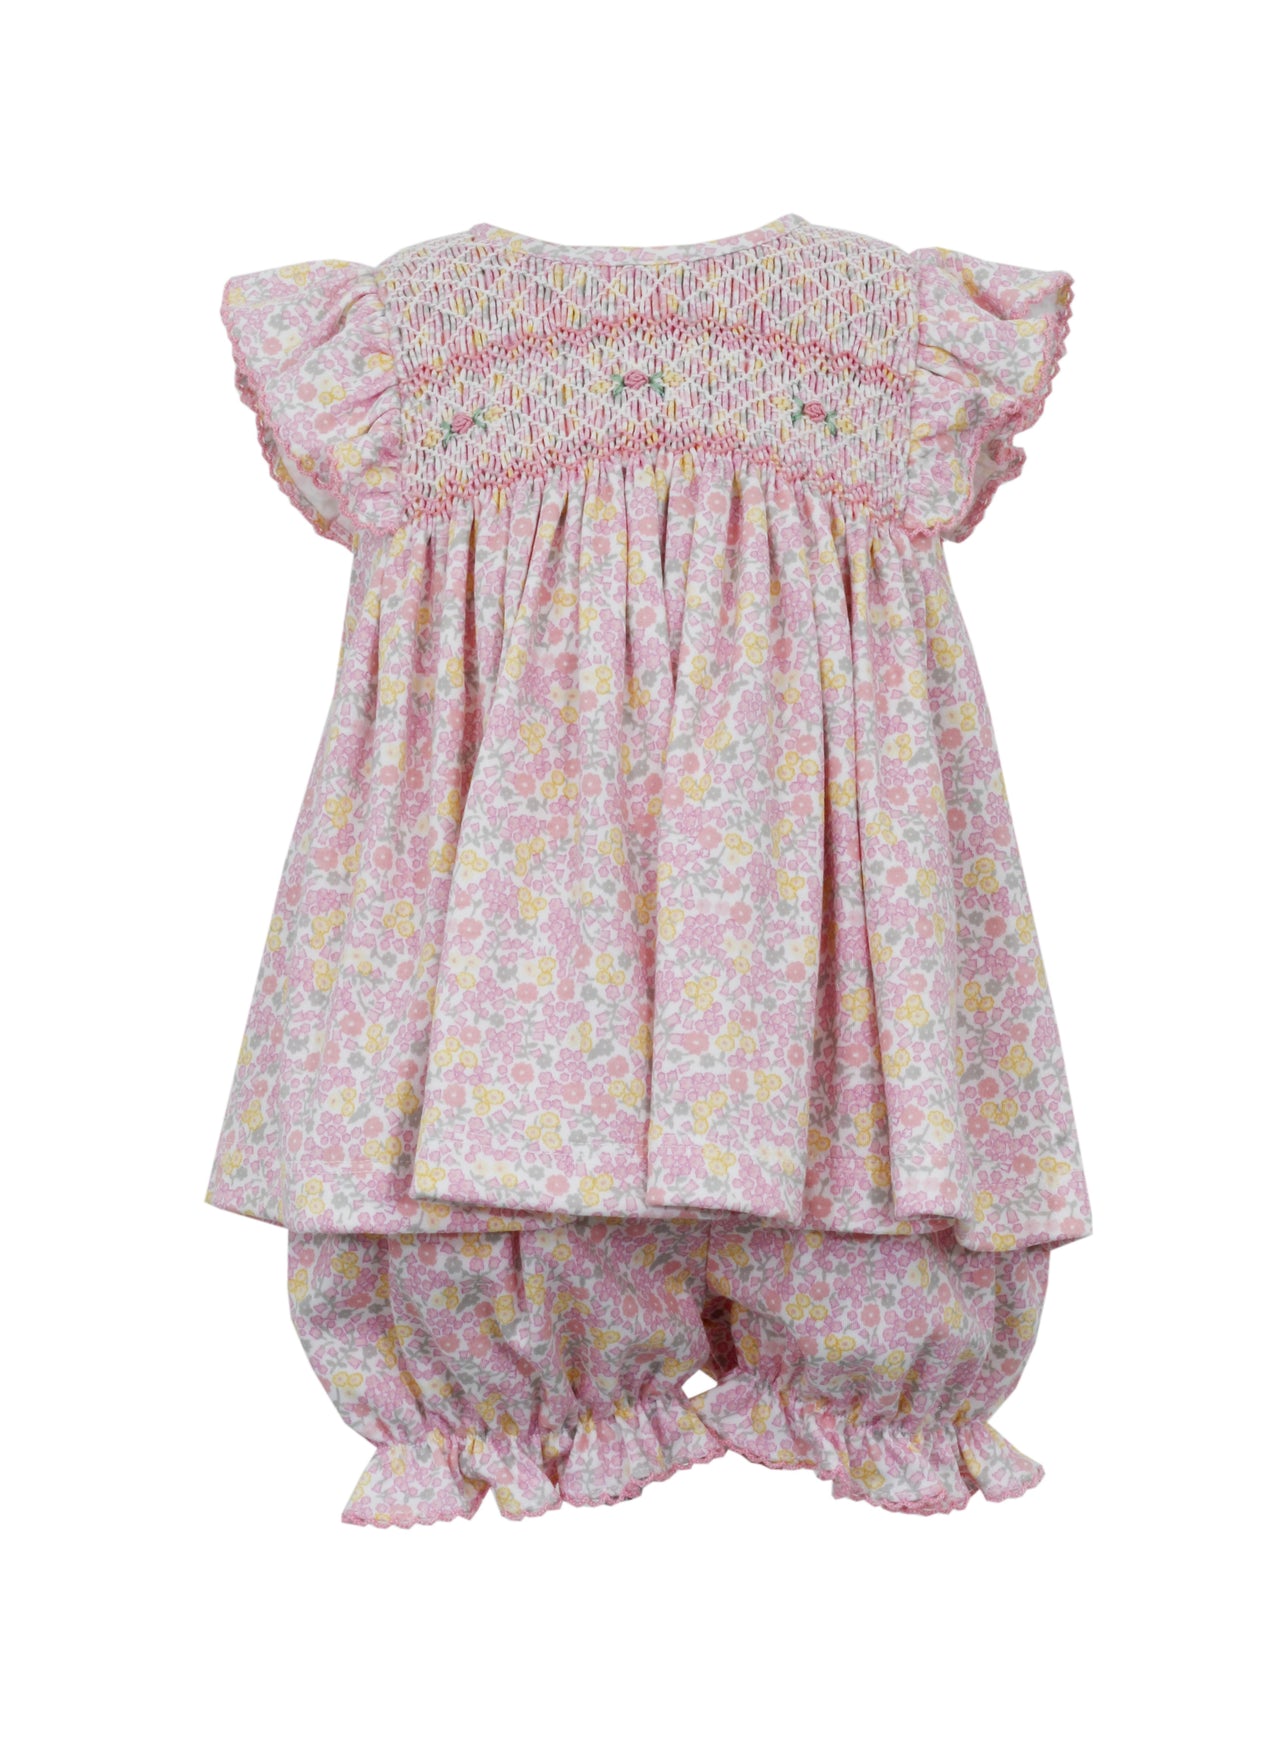 Petit Bebe Sophia Pink Floral Knit Sleeveless Bishop Bloomer Set401C-MS24 5102